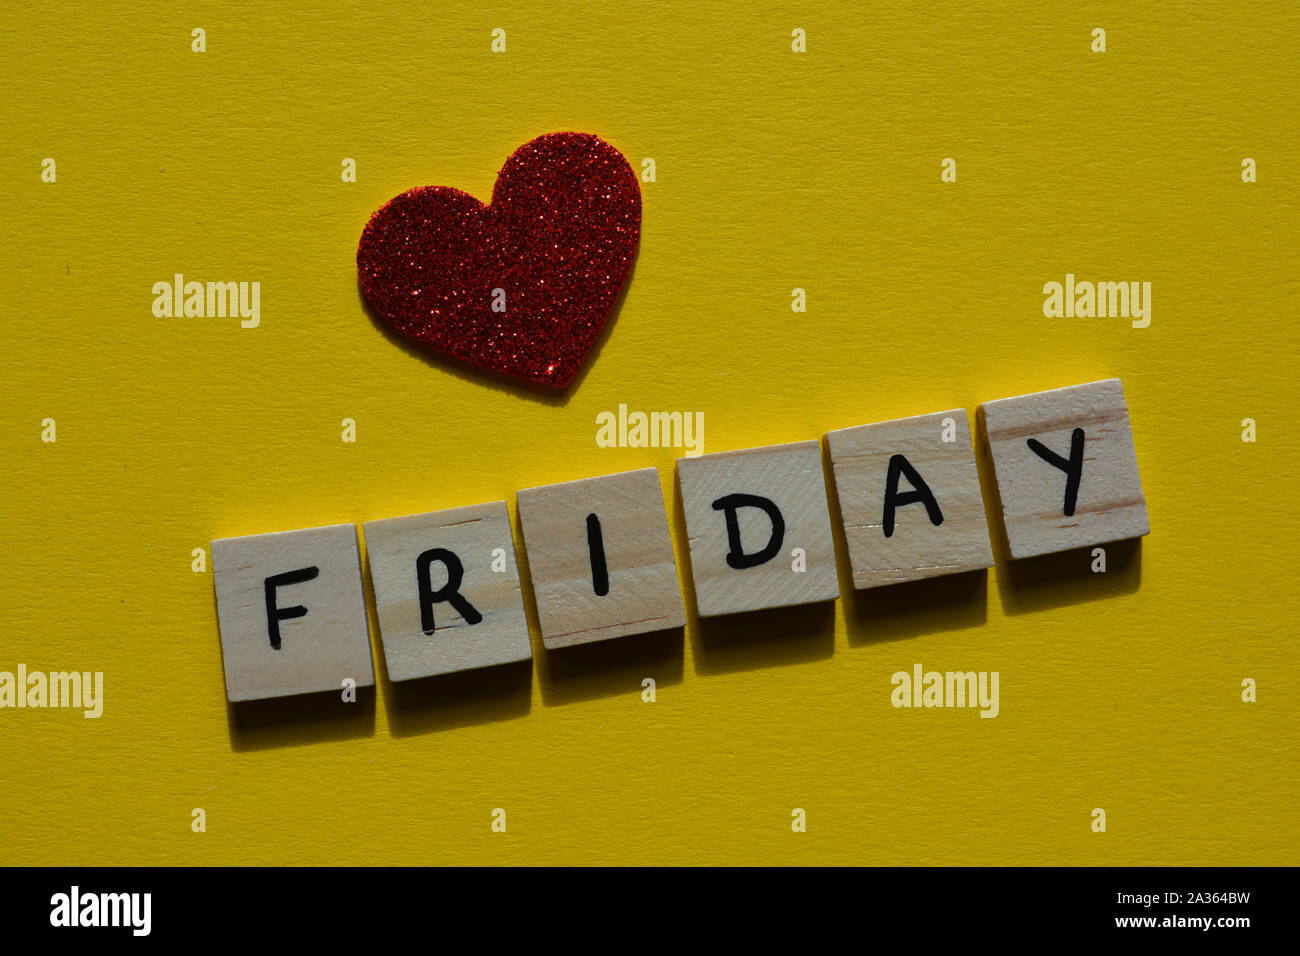 Freitag im Holz- Alphabet Buchstaben auf einem gelben Hintergrund mit rotem Glitter Herz Stockfoto